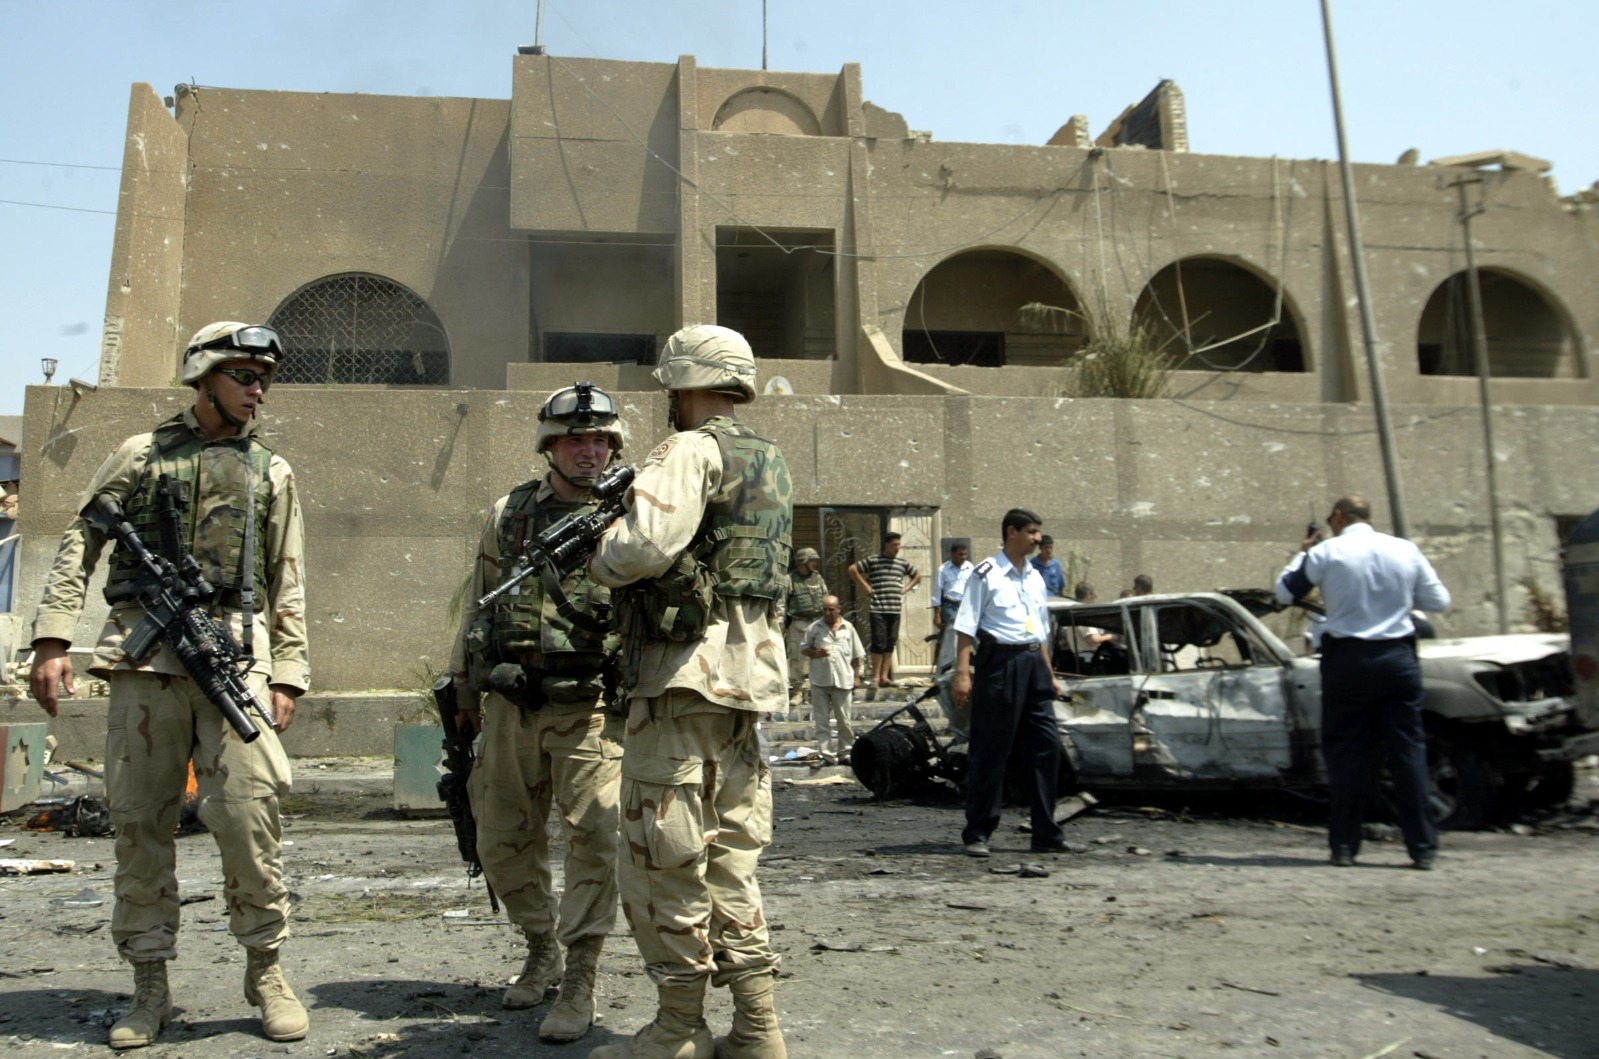 عناصر من الشرطة العراقية والجيش الأميركي يحرسون السفارة الأردنية في بغداد عقب تعرضها لهجوم بسيارة مفخخة. بغداد، العراق. 7 أغسطس 2003